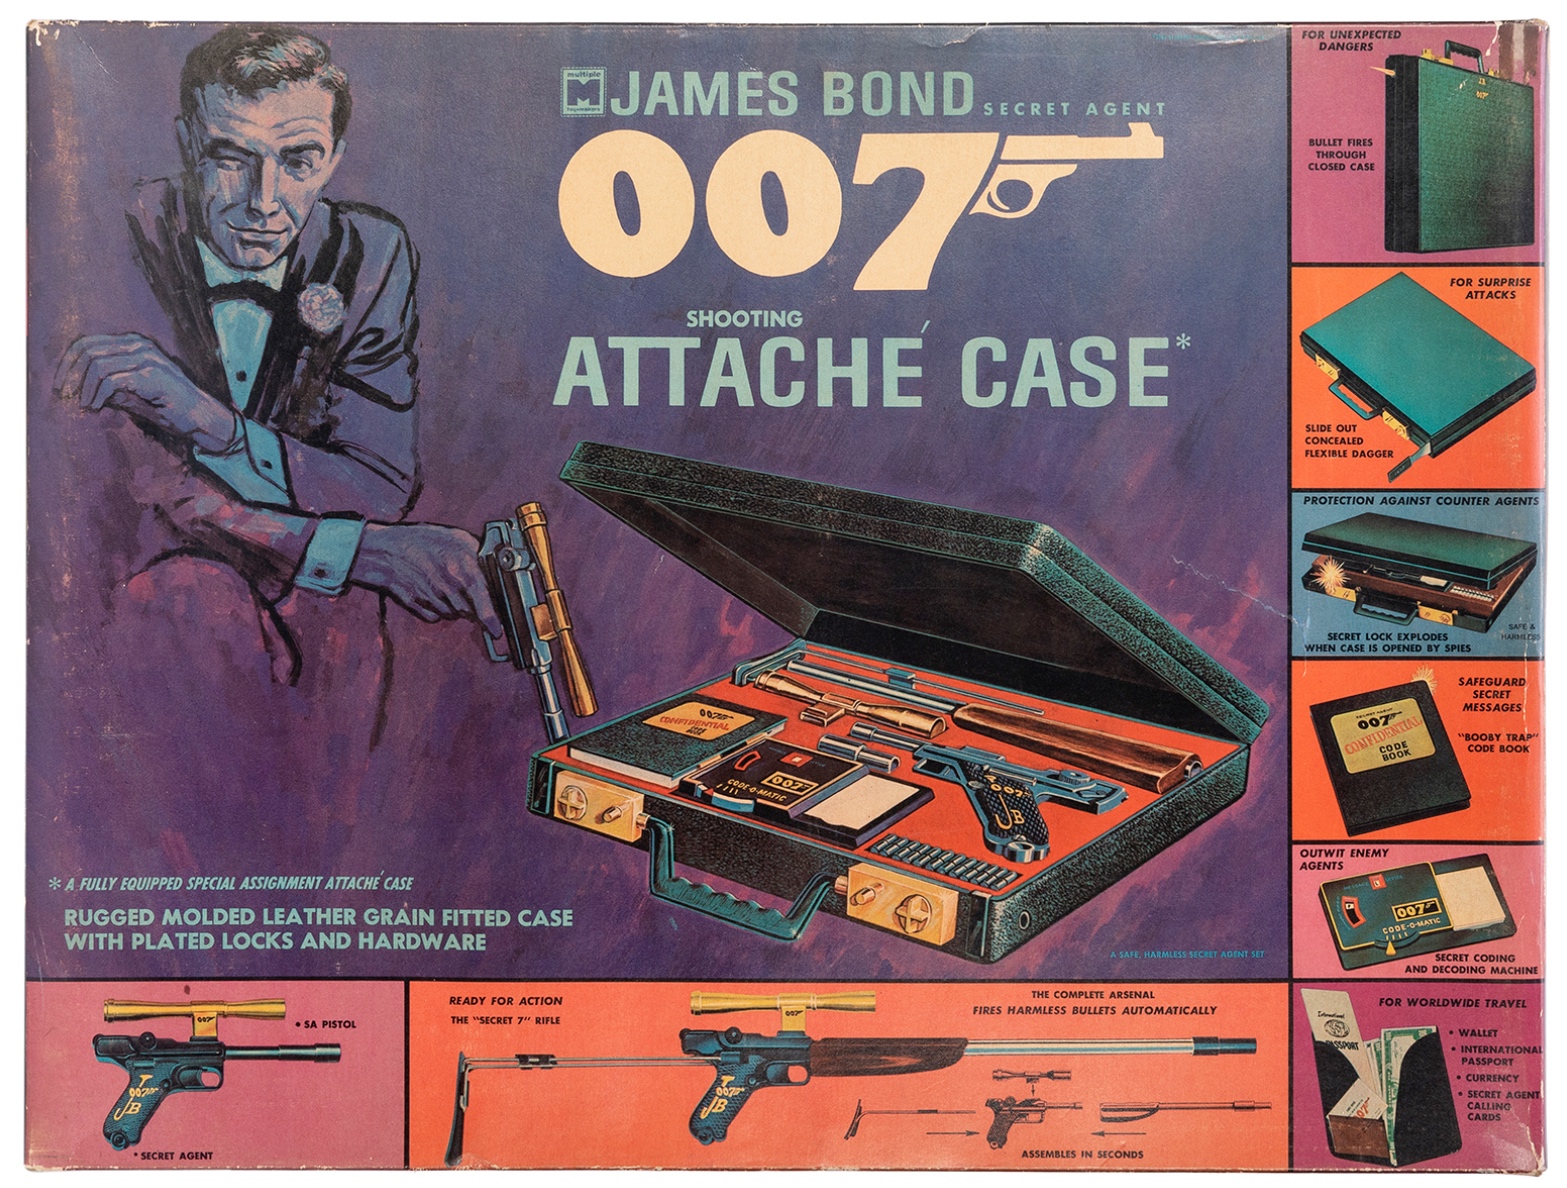 James Bond Secret Agent Shooting Attache Case, $3,840